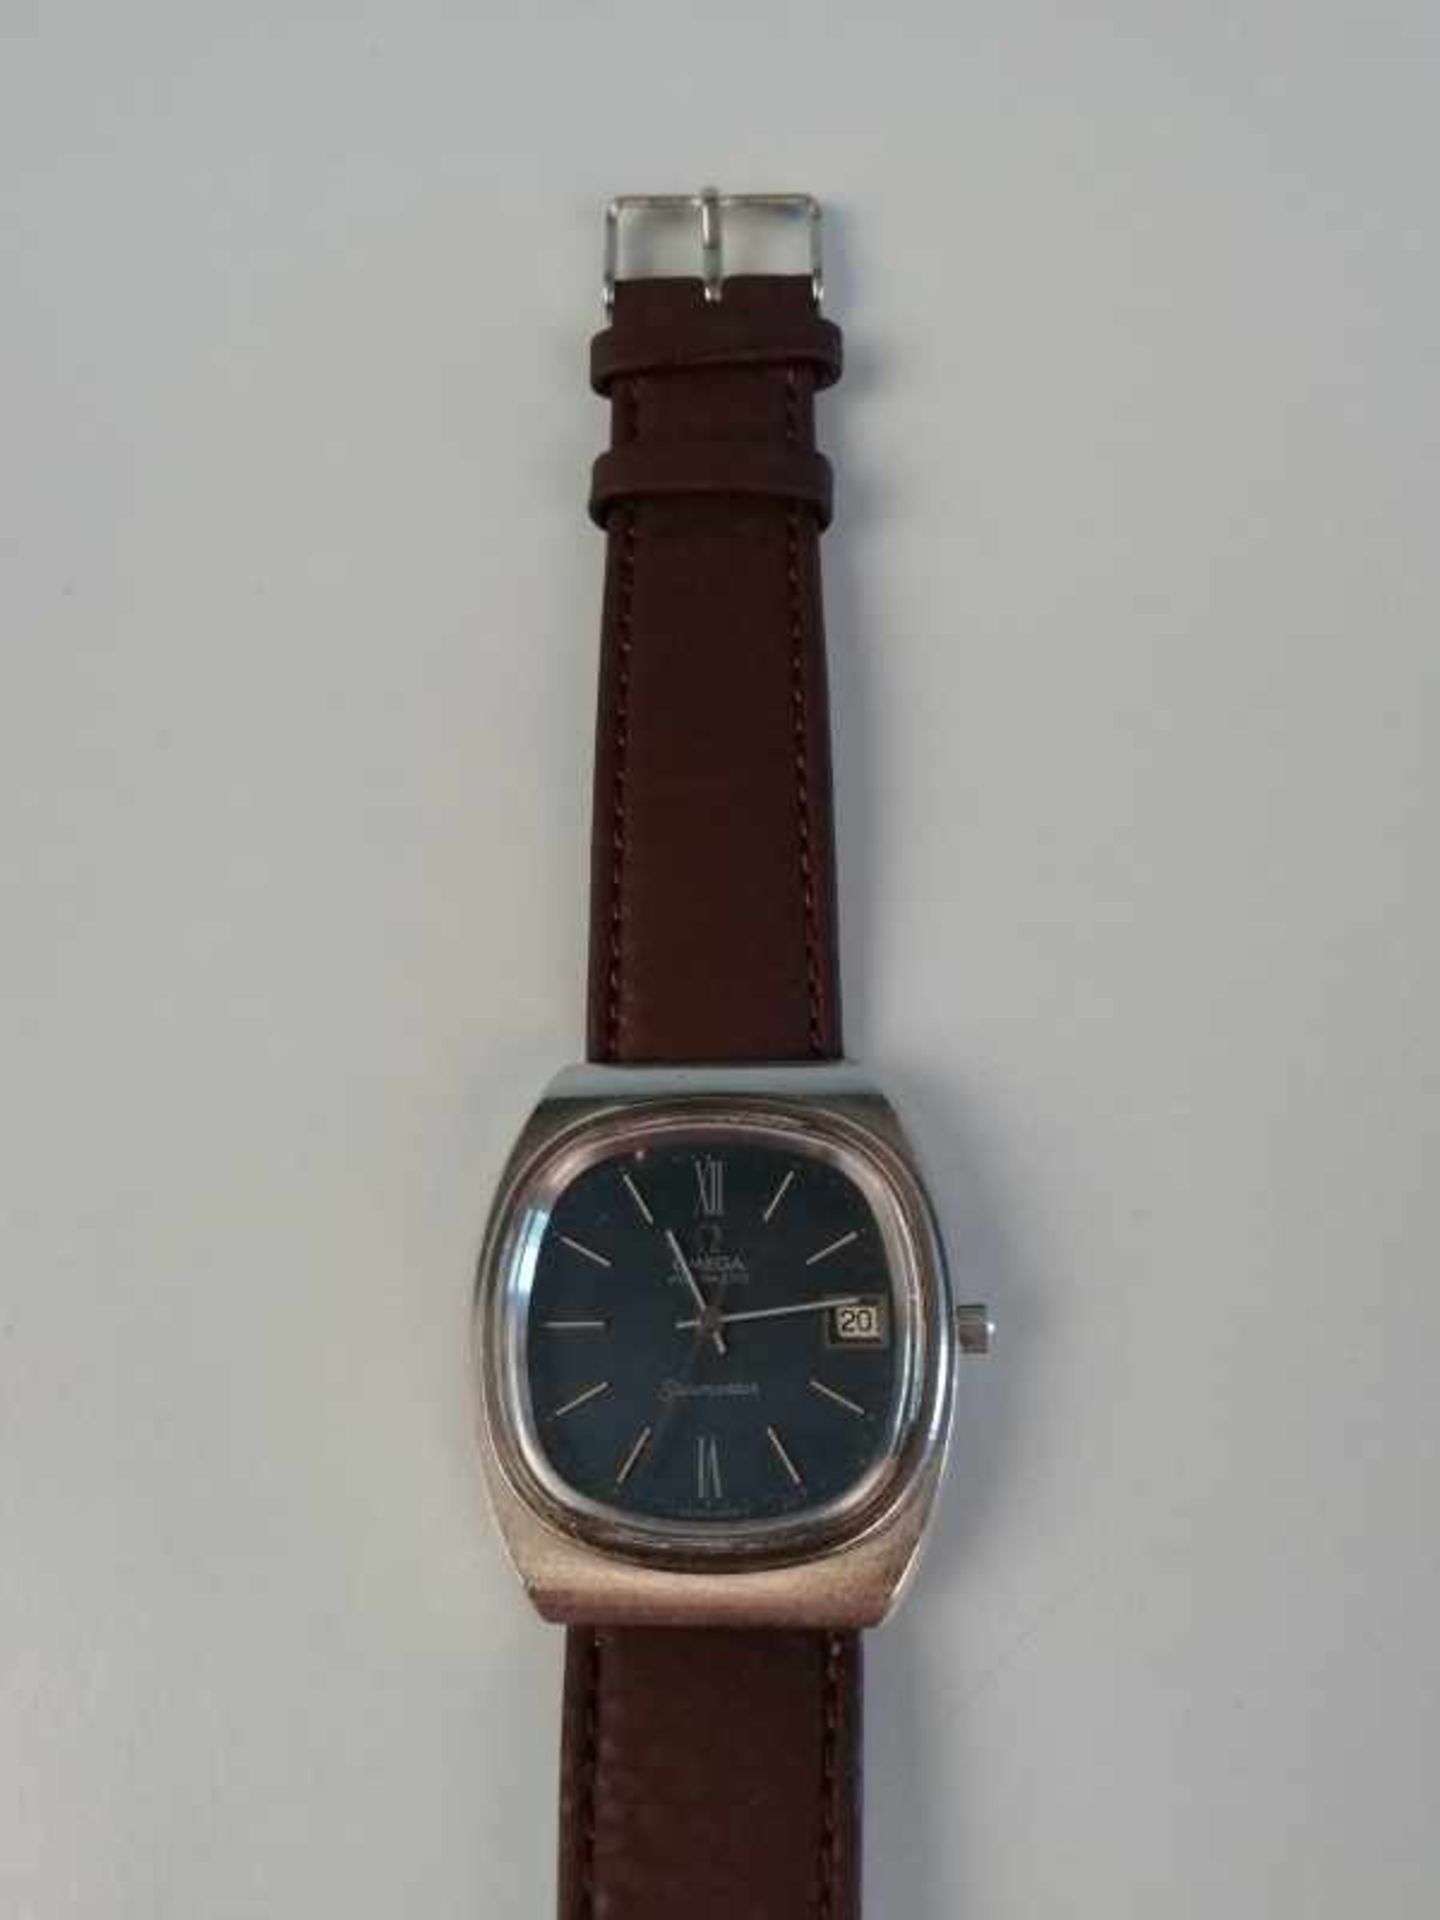 Armbanduhr "Omega"Metall, vintage, Automatik, Datum, 46,4g, Werkservice wird empfohlen, keine